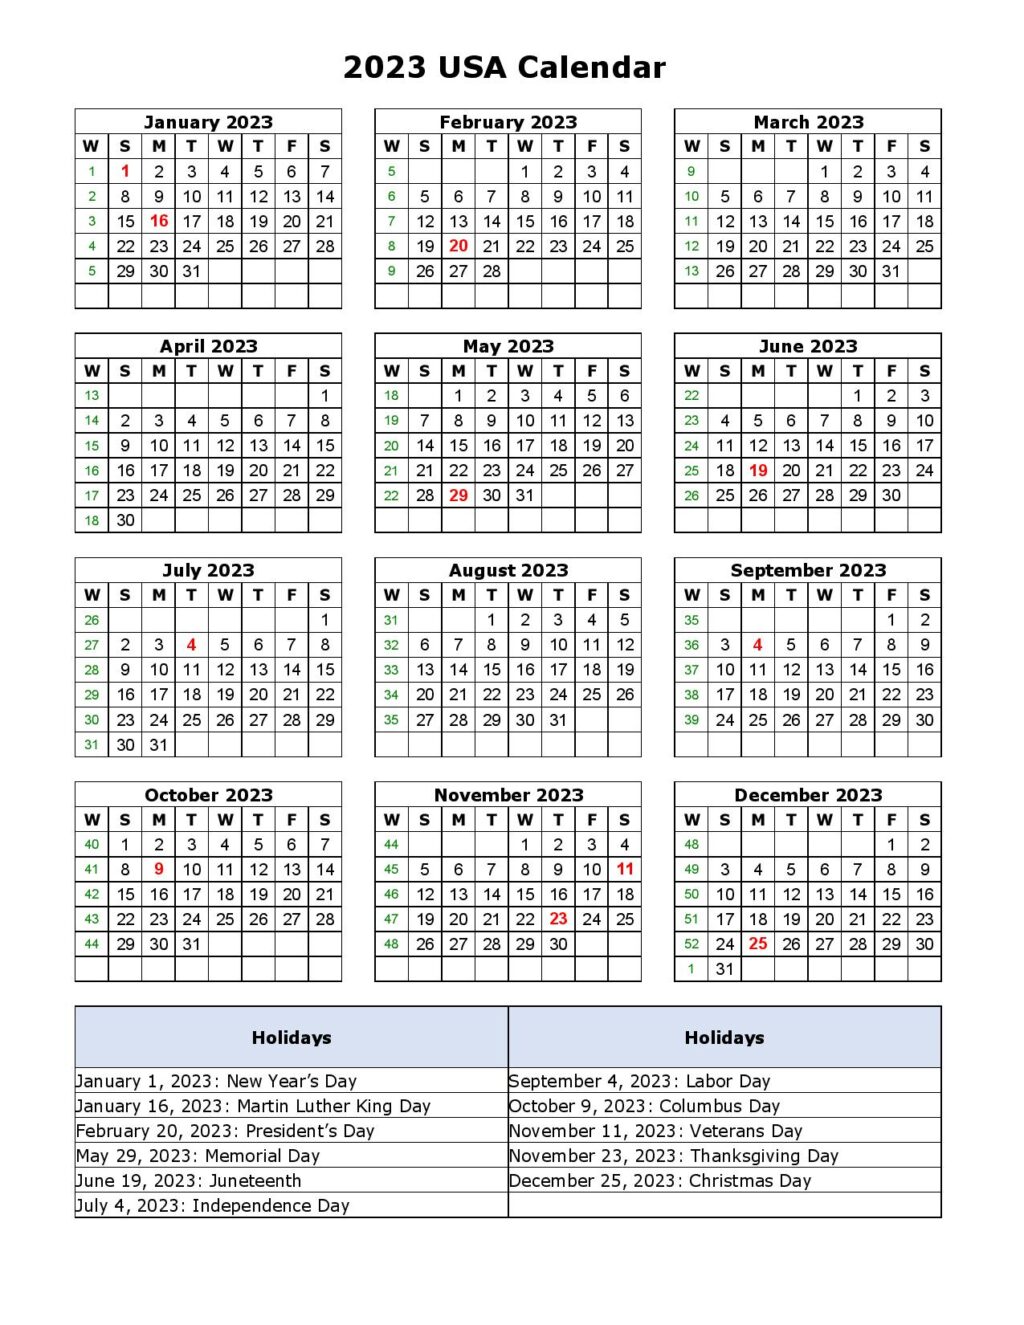 2023 Usa Calendar With Holidays - Printable Template - Printable 